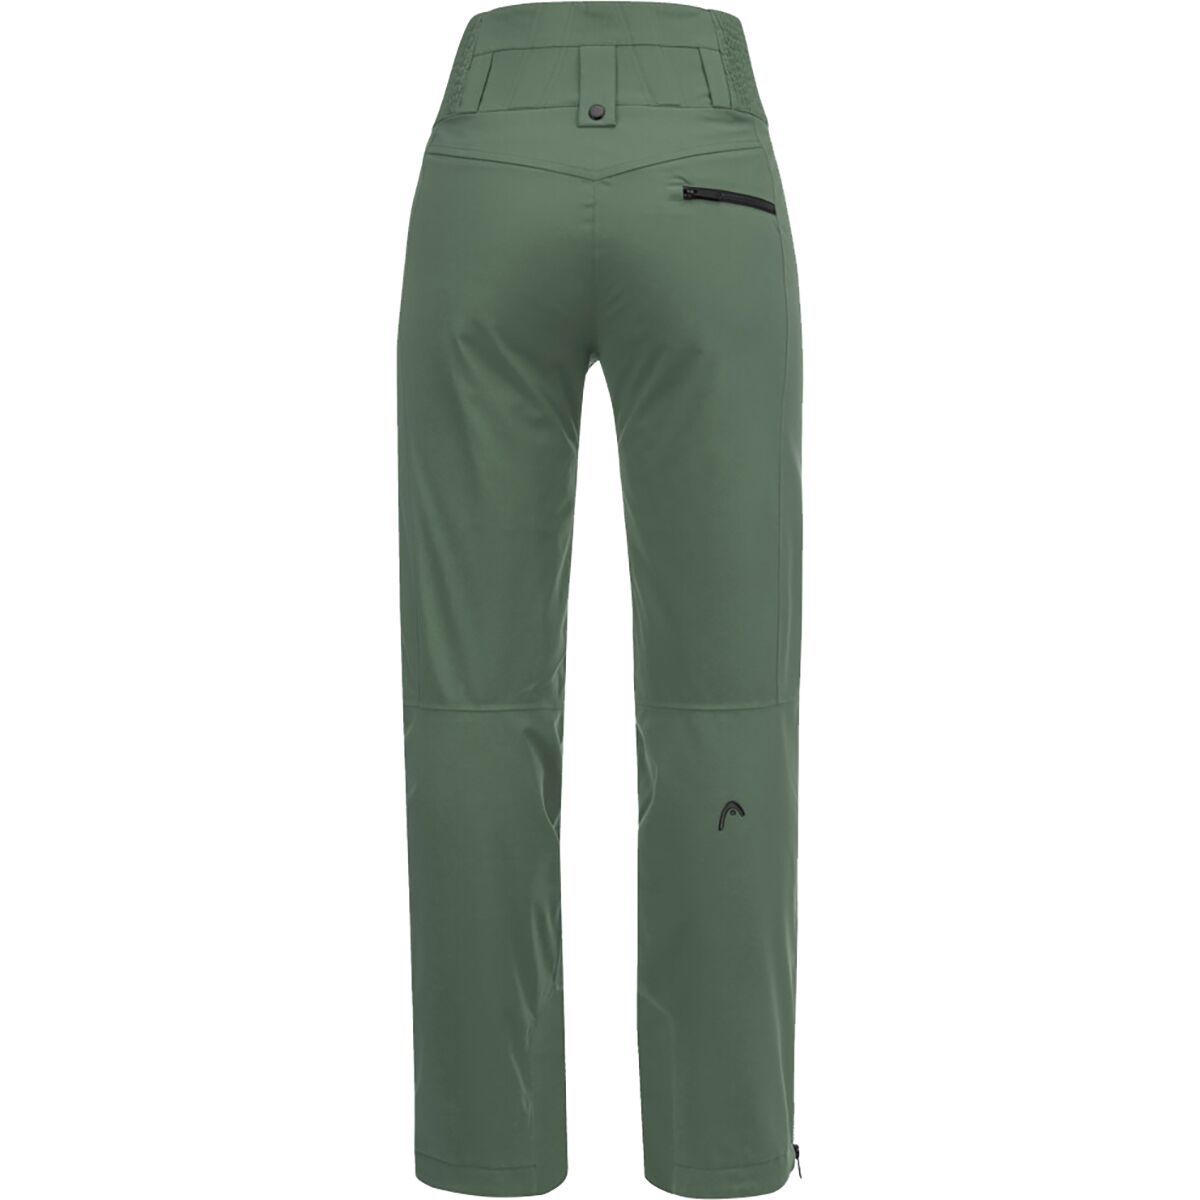 HEAD Sportswear Emerald Pant - Women's - Clothing